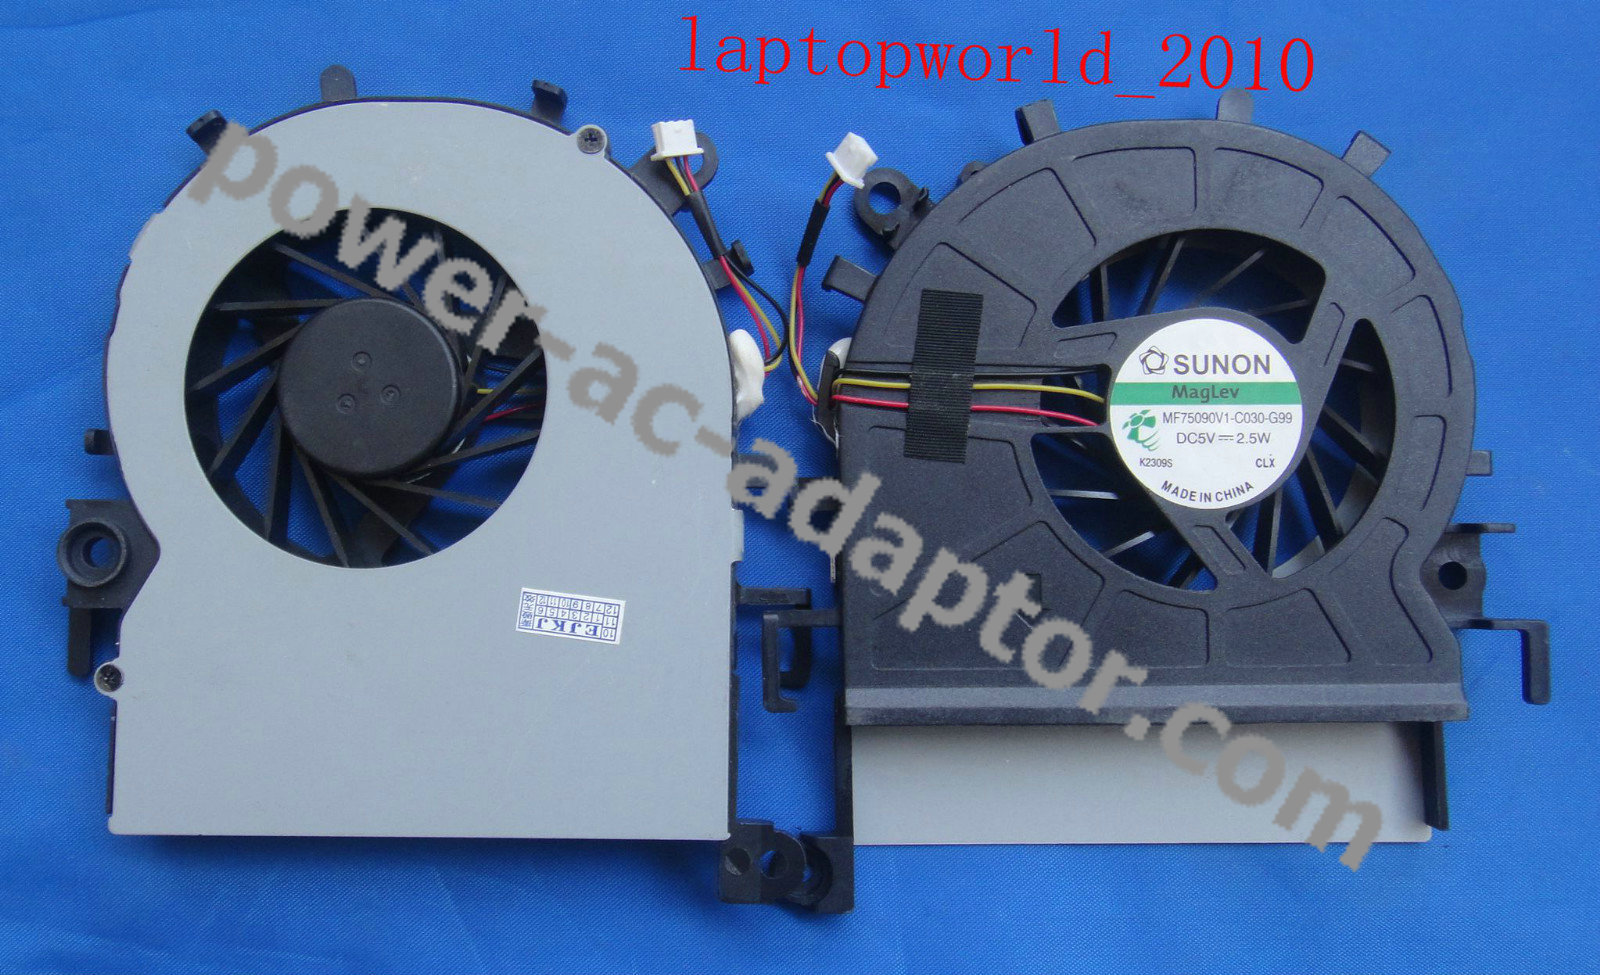 New SUNON MF75090V1-C030-G99 2.5W 3PIN CPU Cooling fan